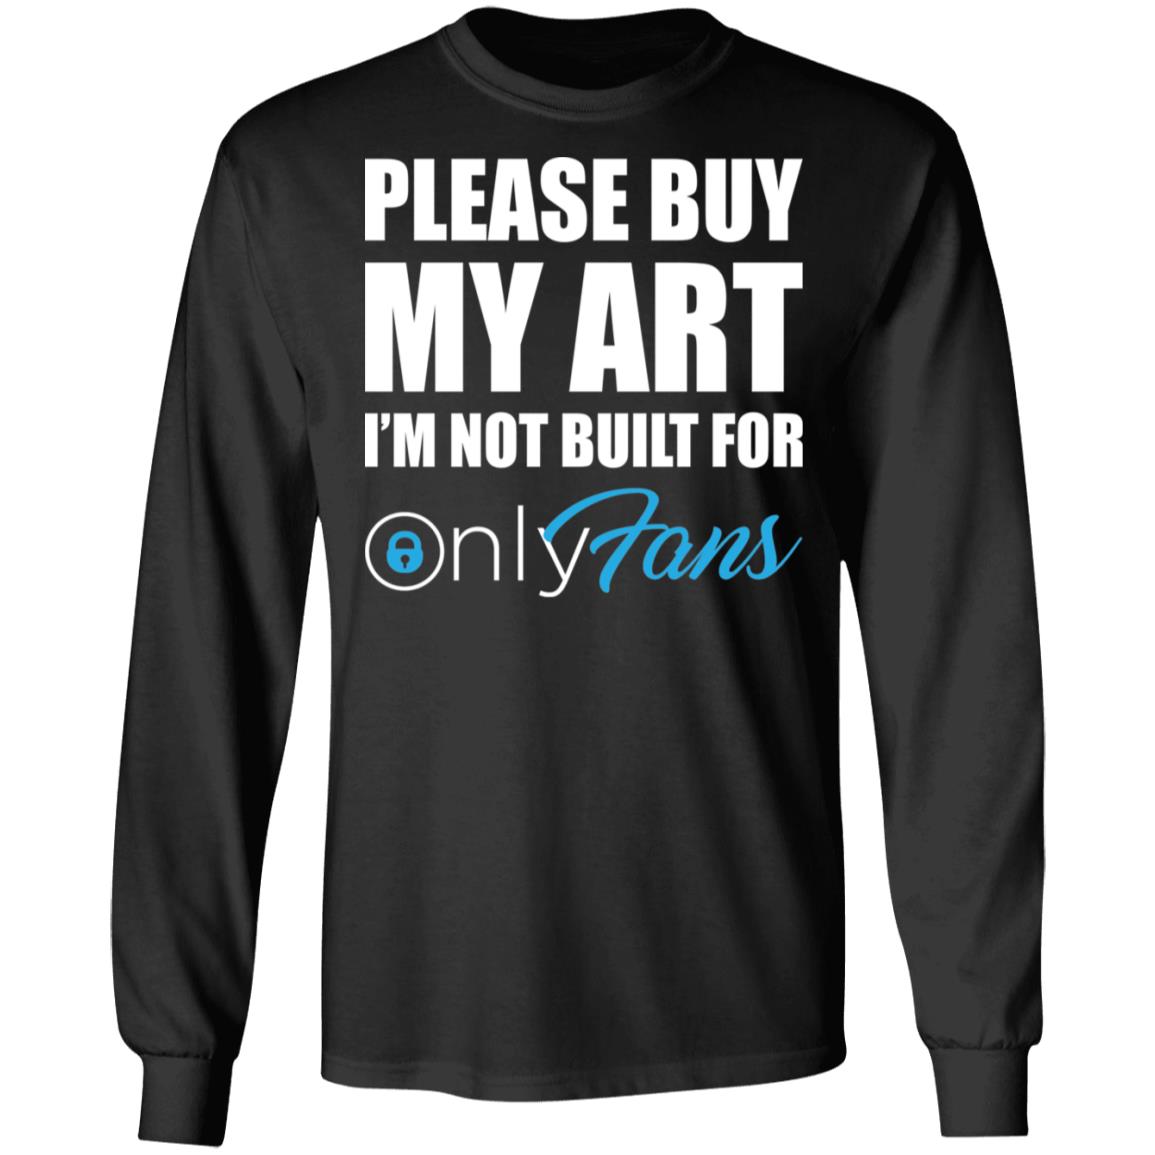 Only fans shirt